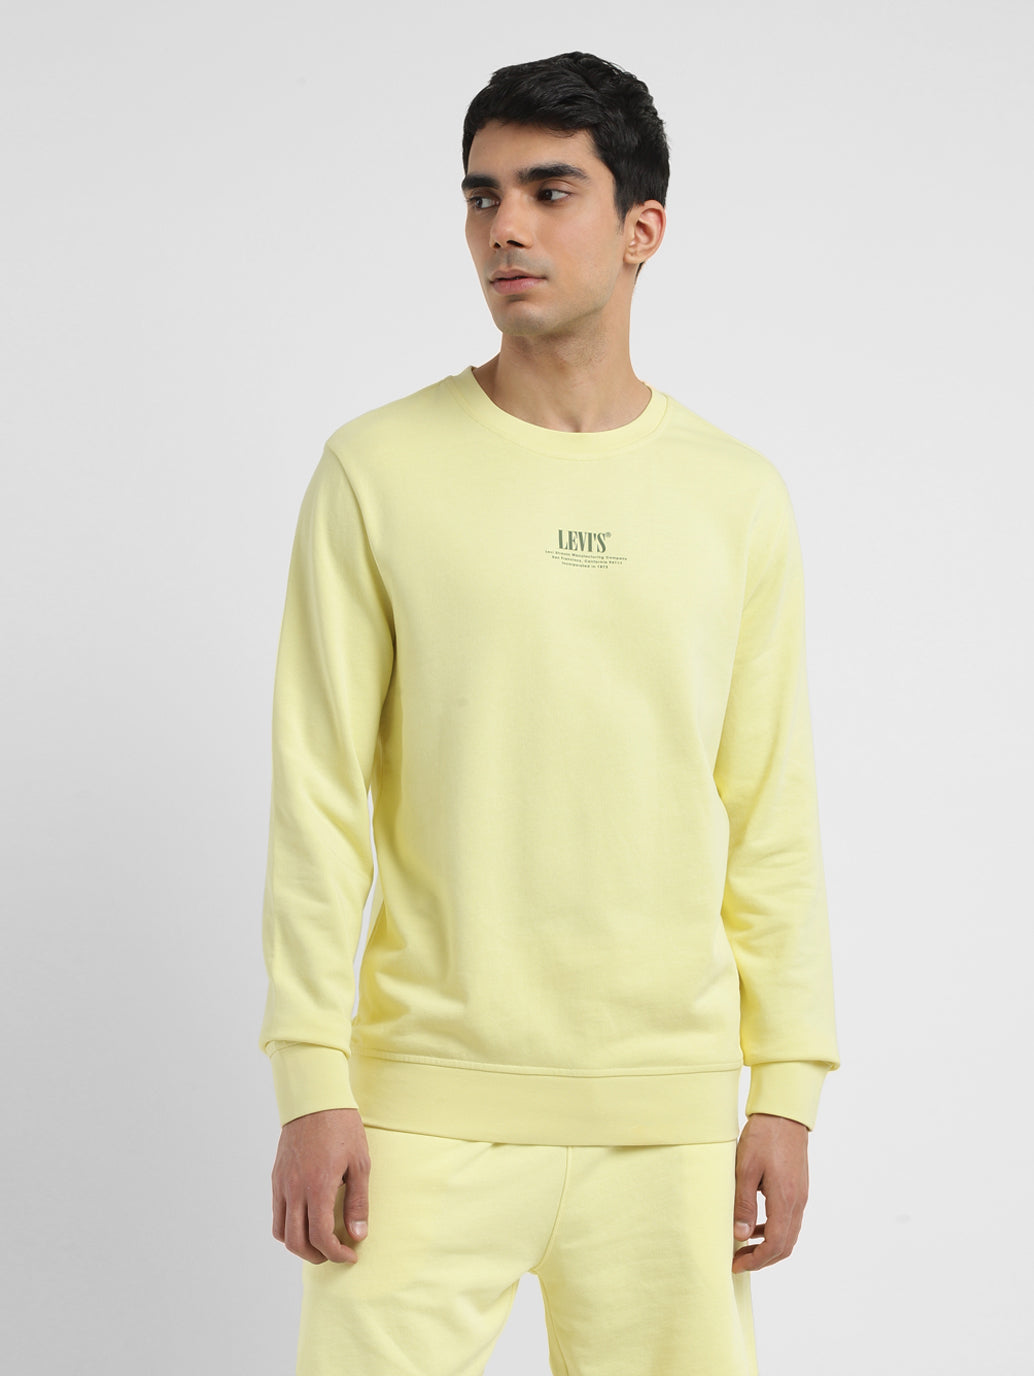 Men's Solid Yellow Crew Neck Sweatshirt